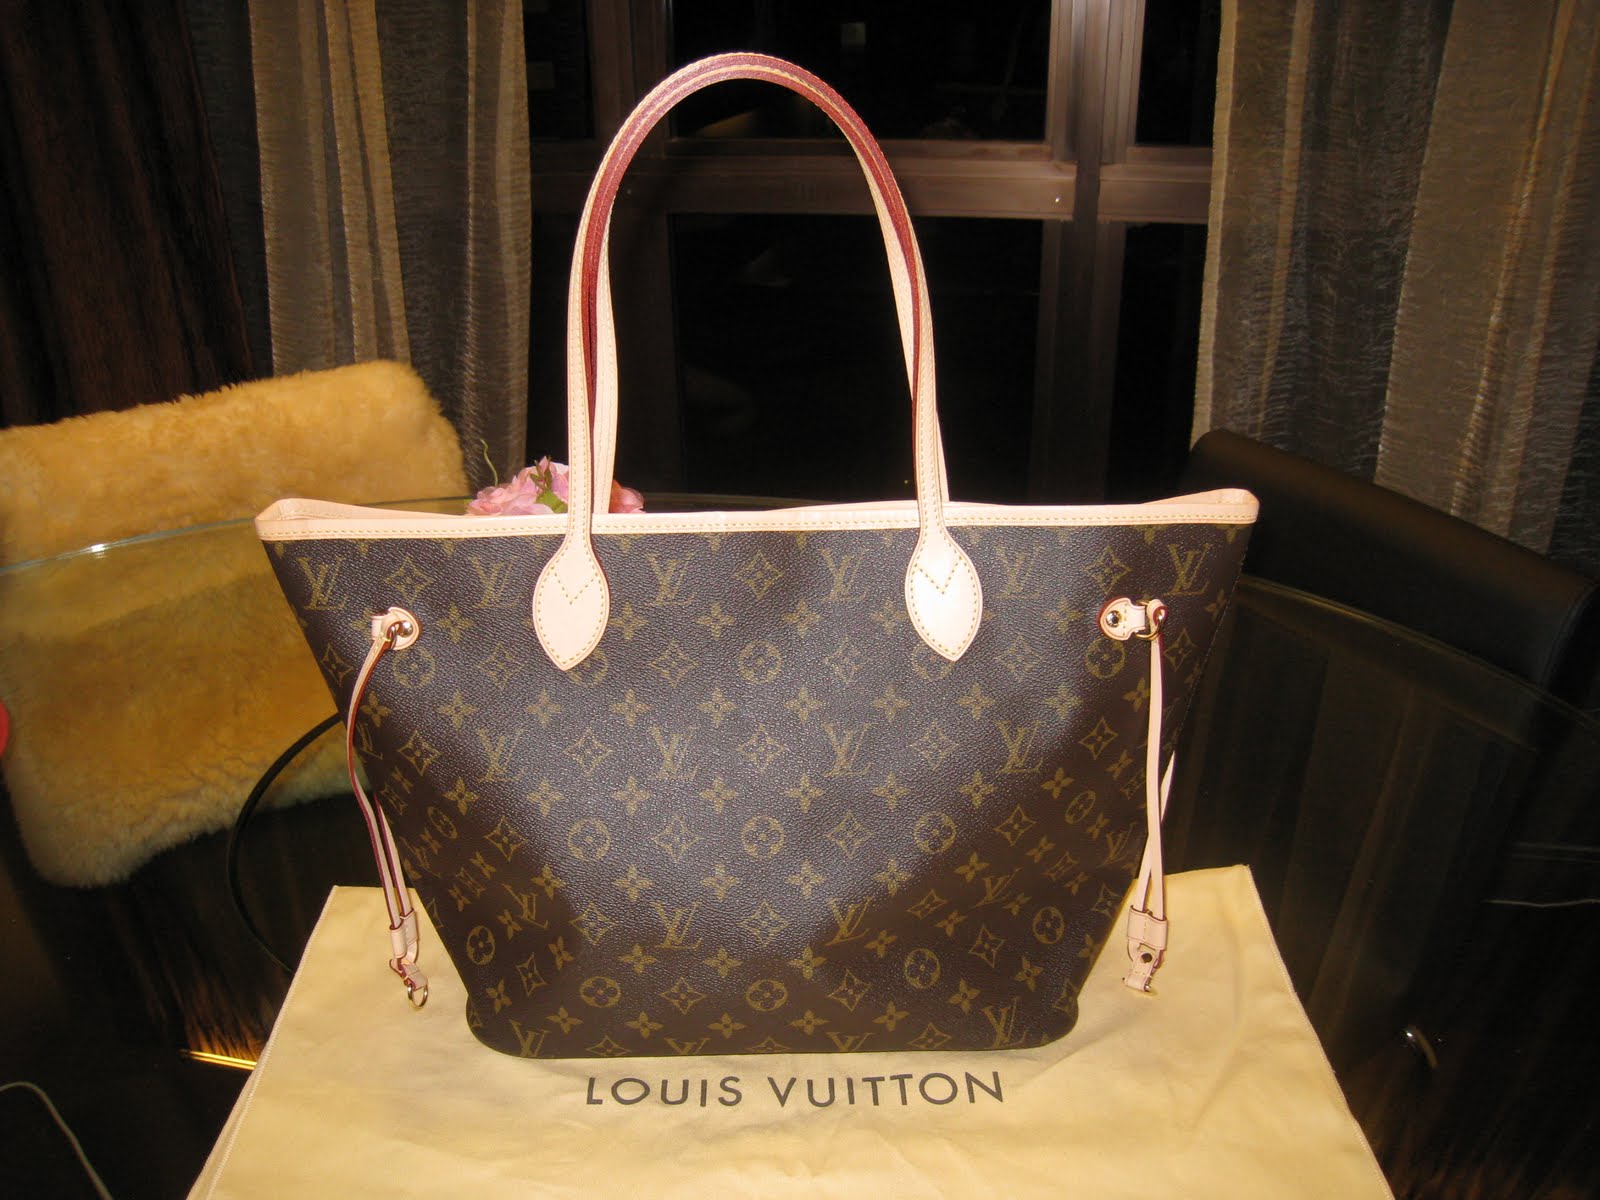 Singapore Bag Rental: Louis Vuitton